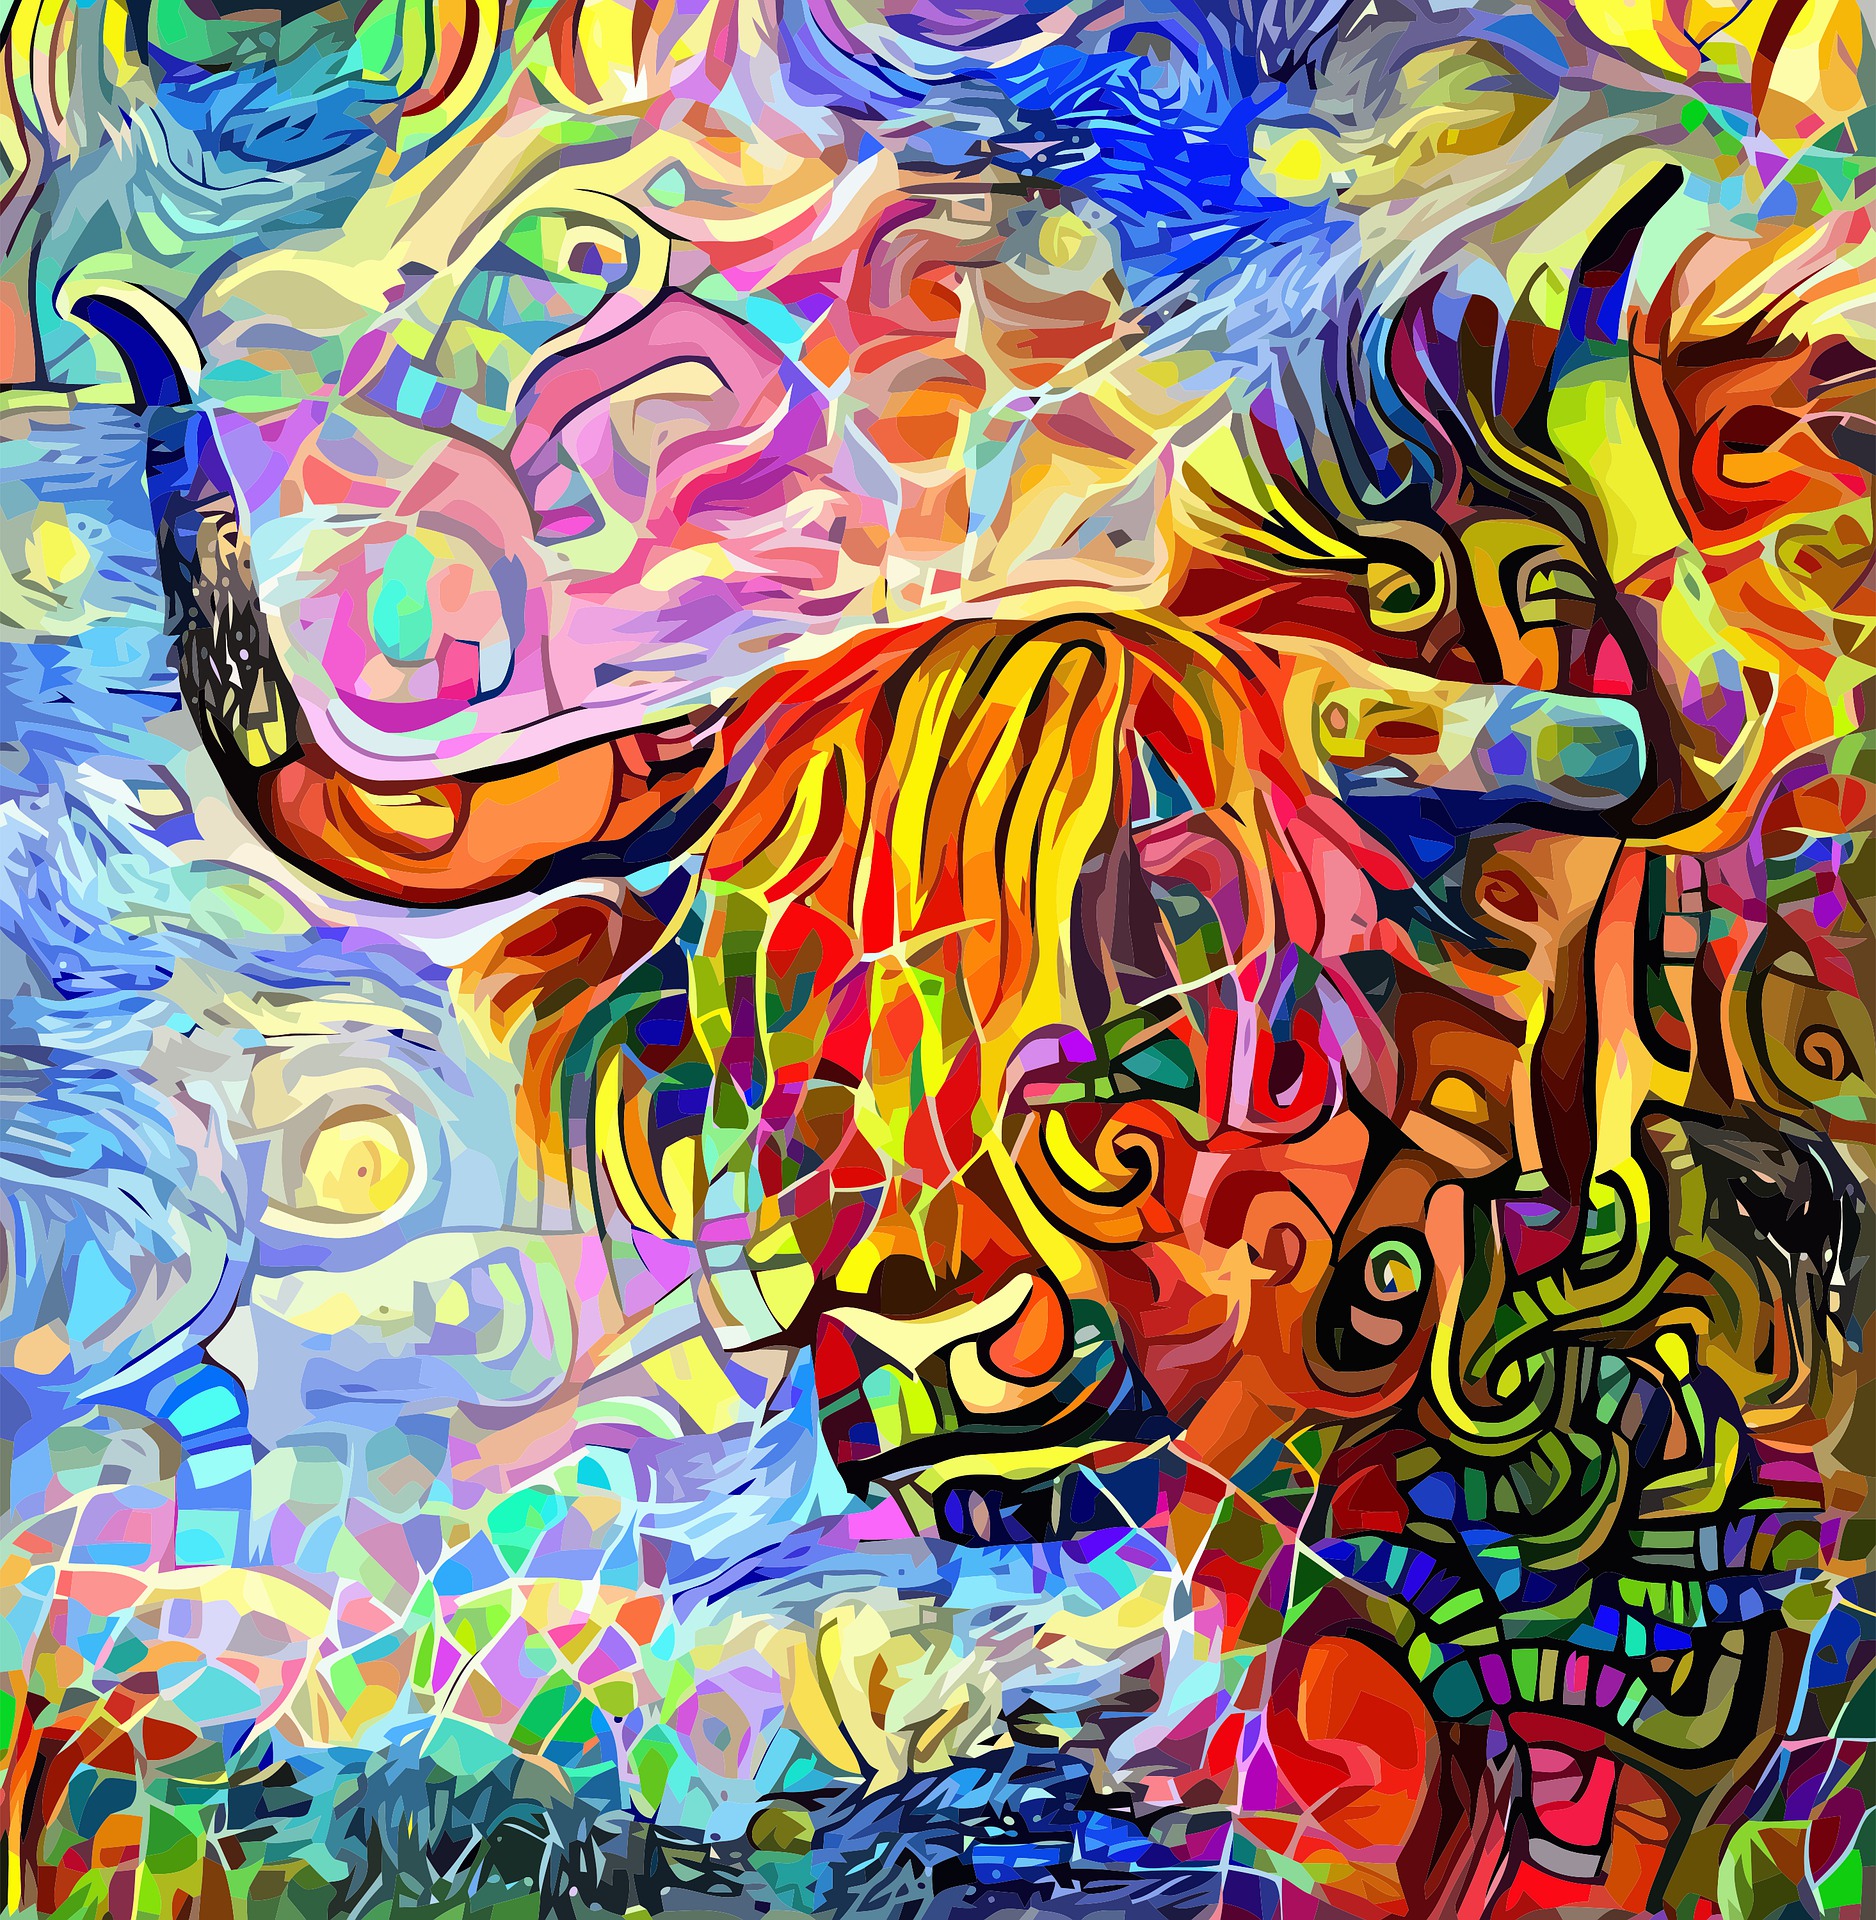 Cabeza de vaca de cores a modo de mosaico debuxado